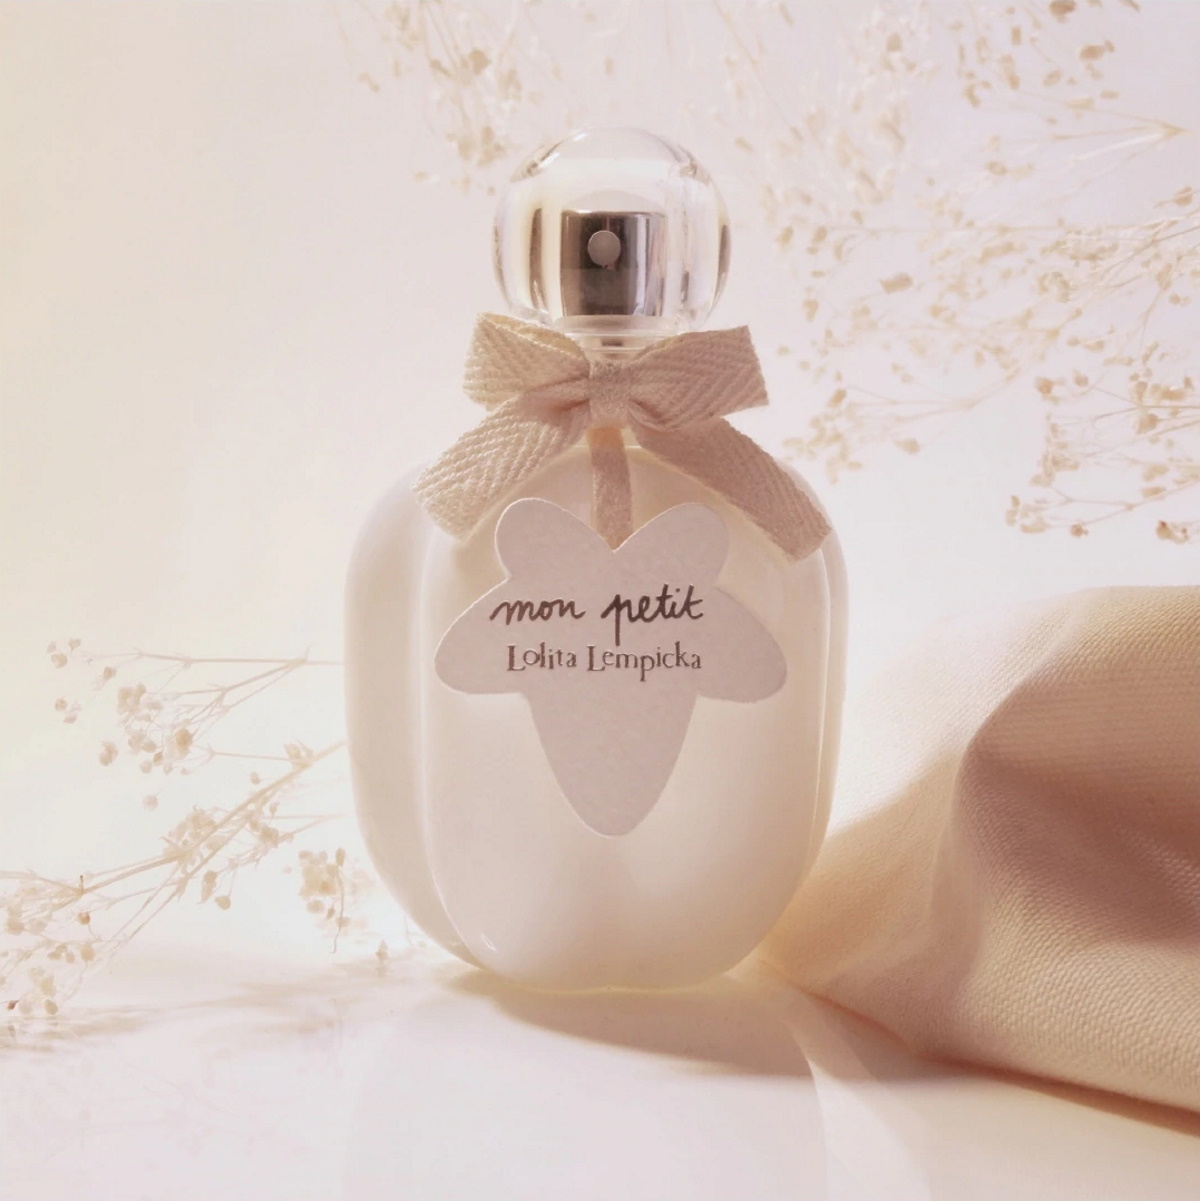 Idée Cadeau pour Enfant Mon Petit Loliata Lempicka parfum bébé